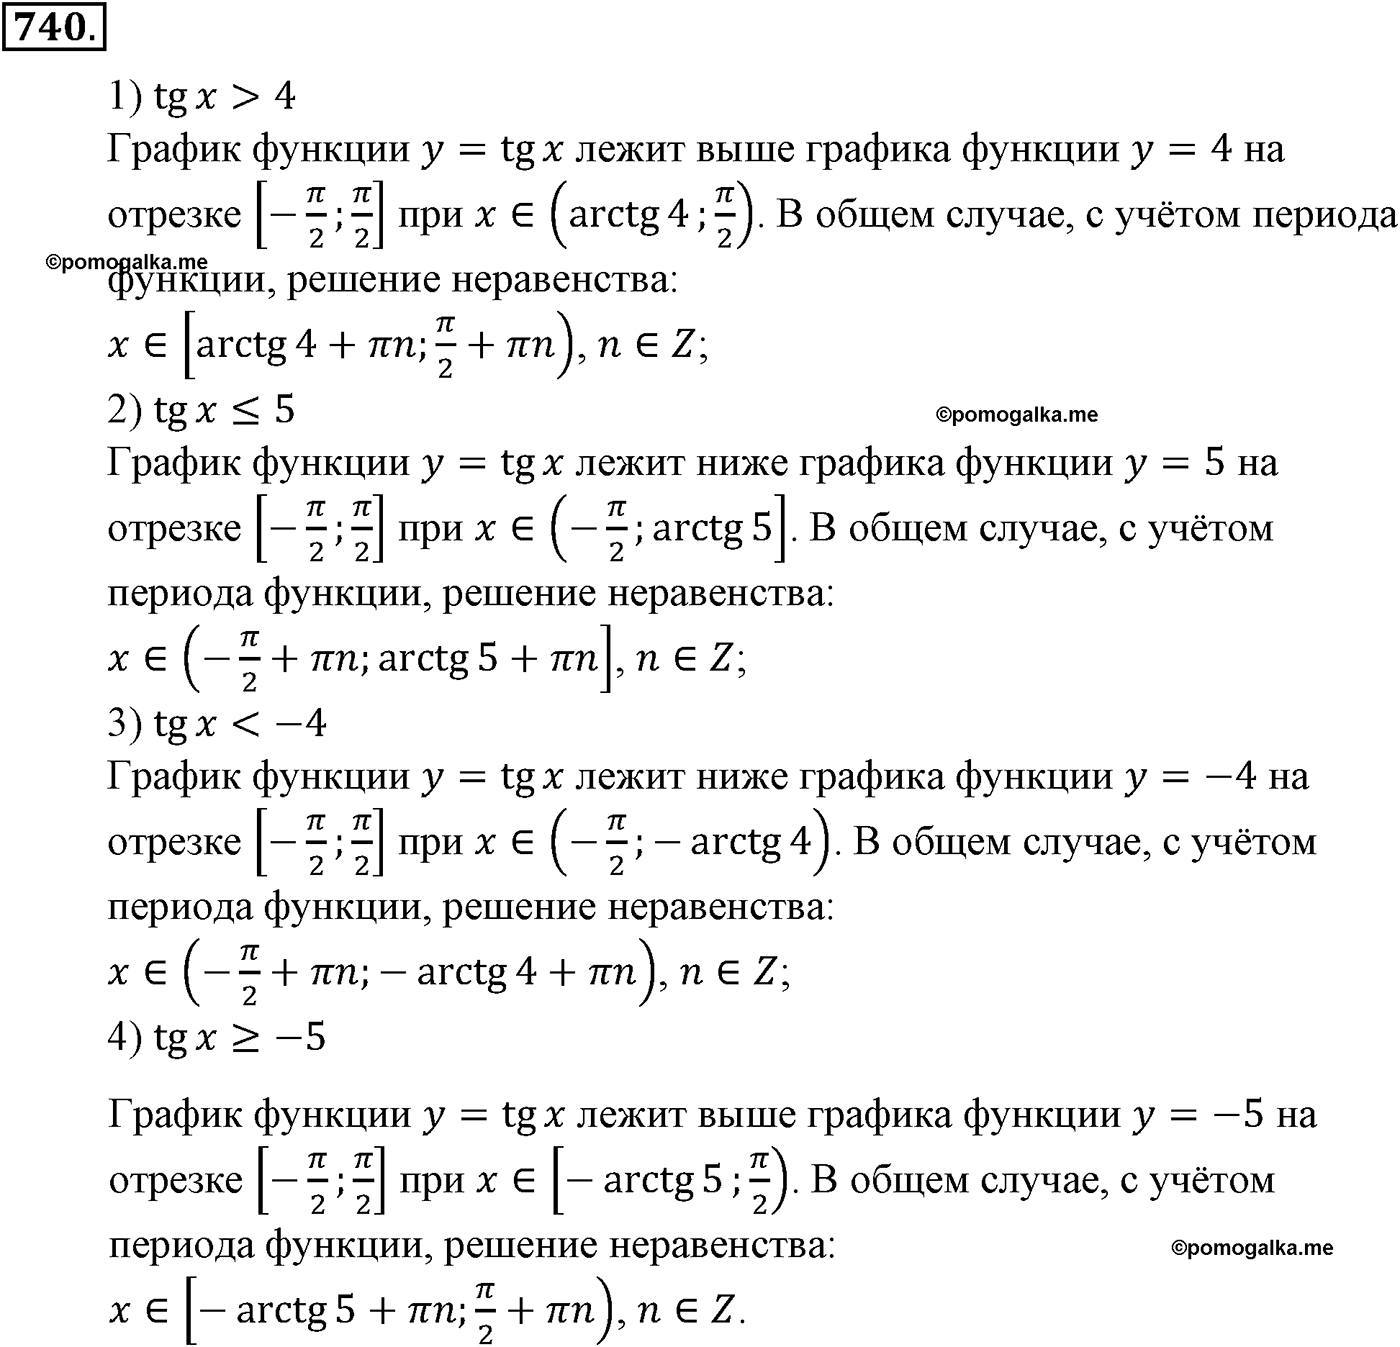 разбор задачи №740 по алгебре за 10-11 класс из учебника Алимова, Колягина